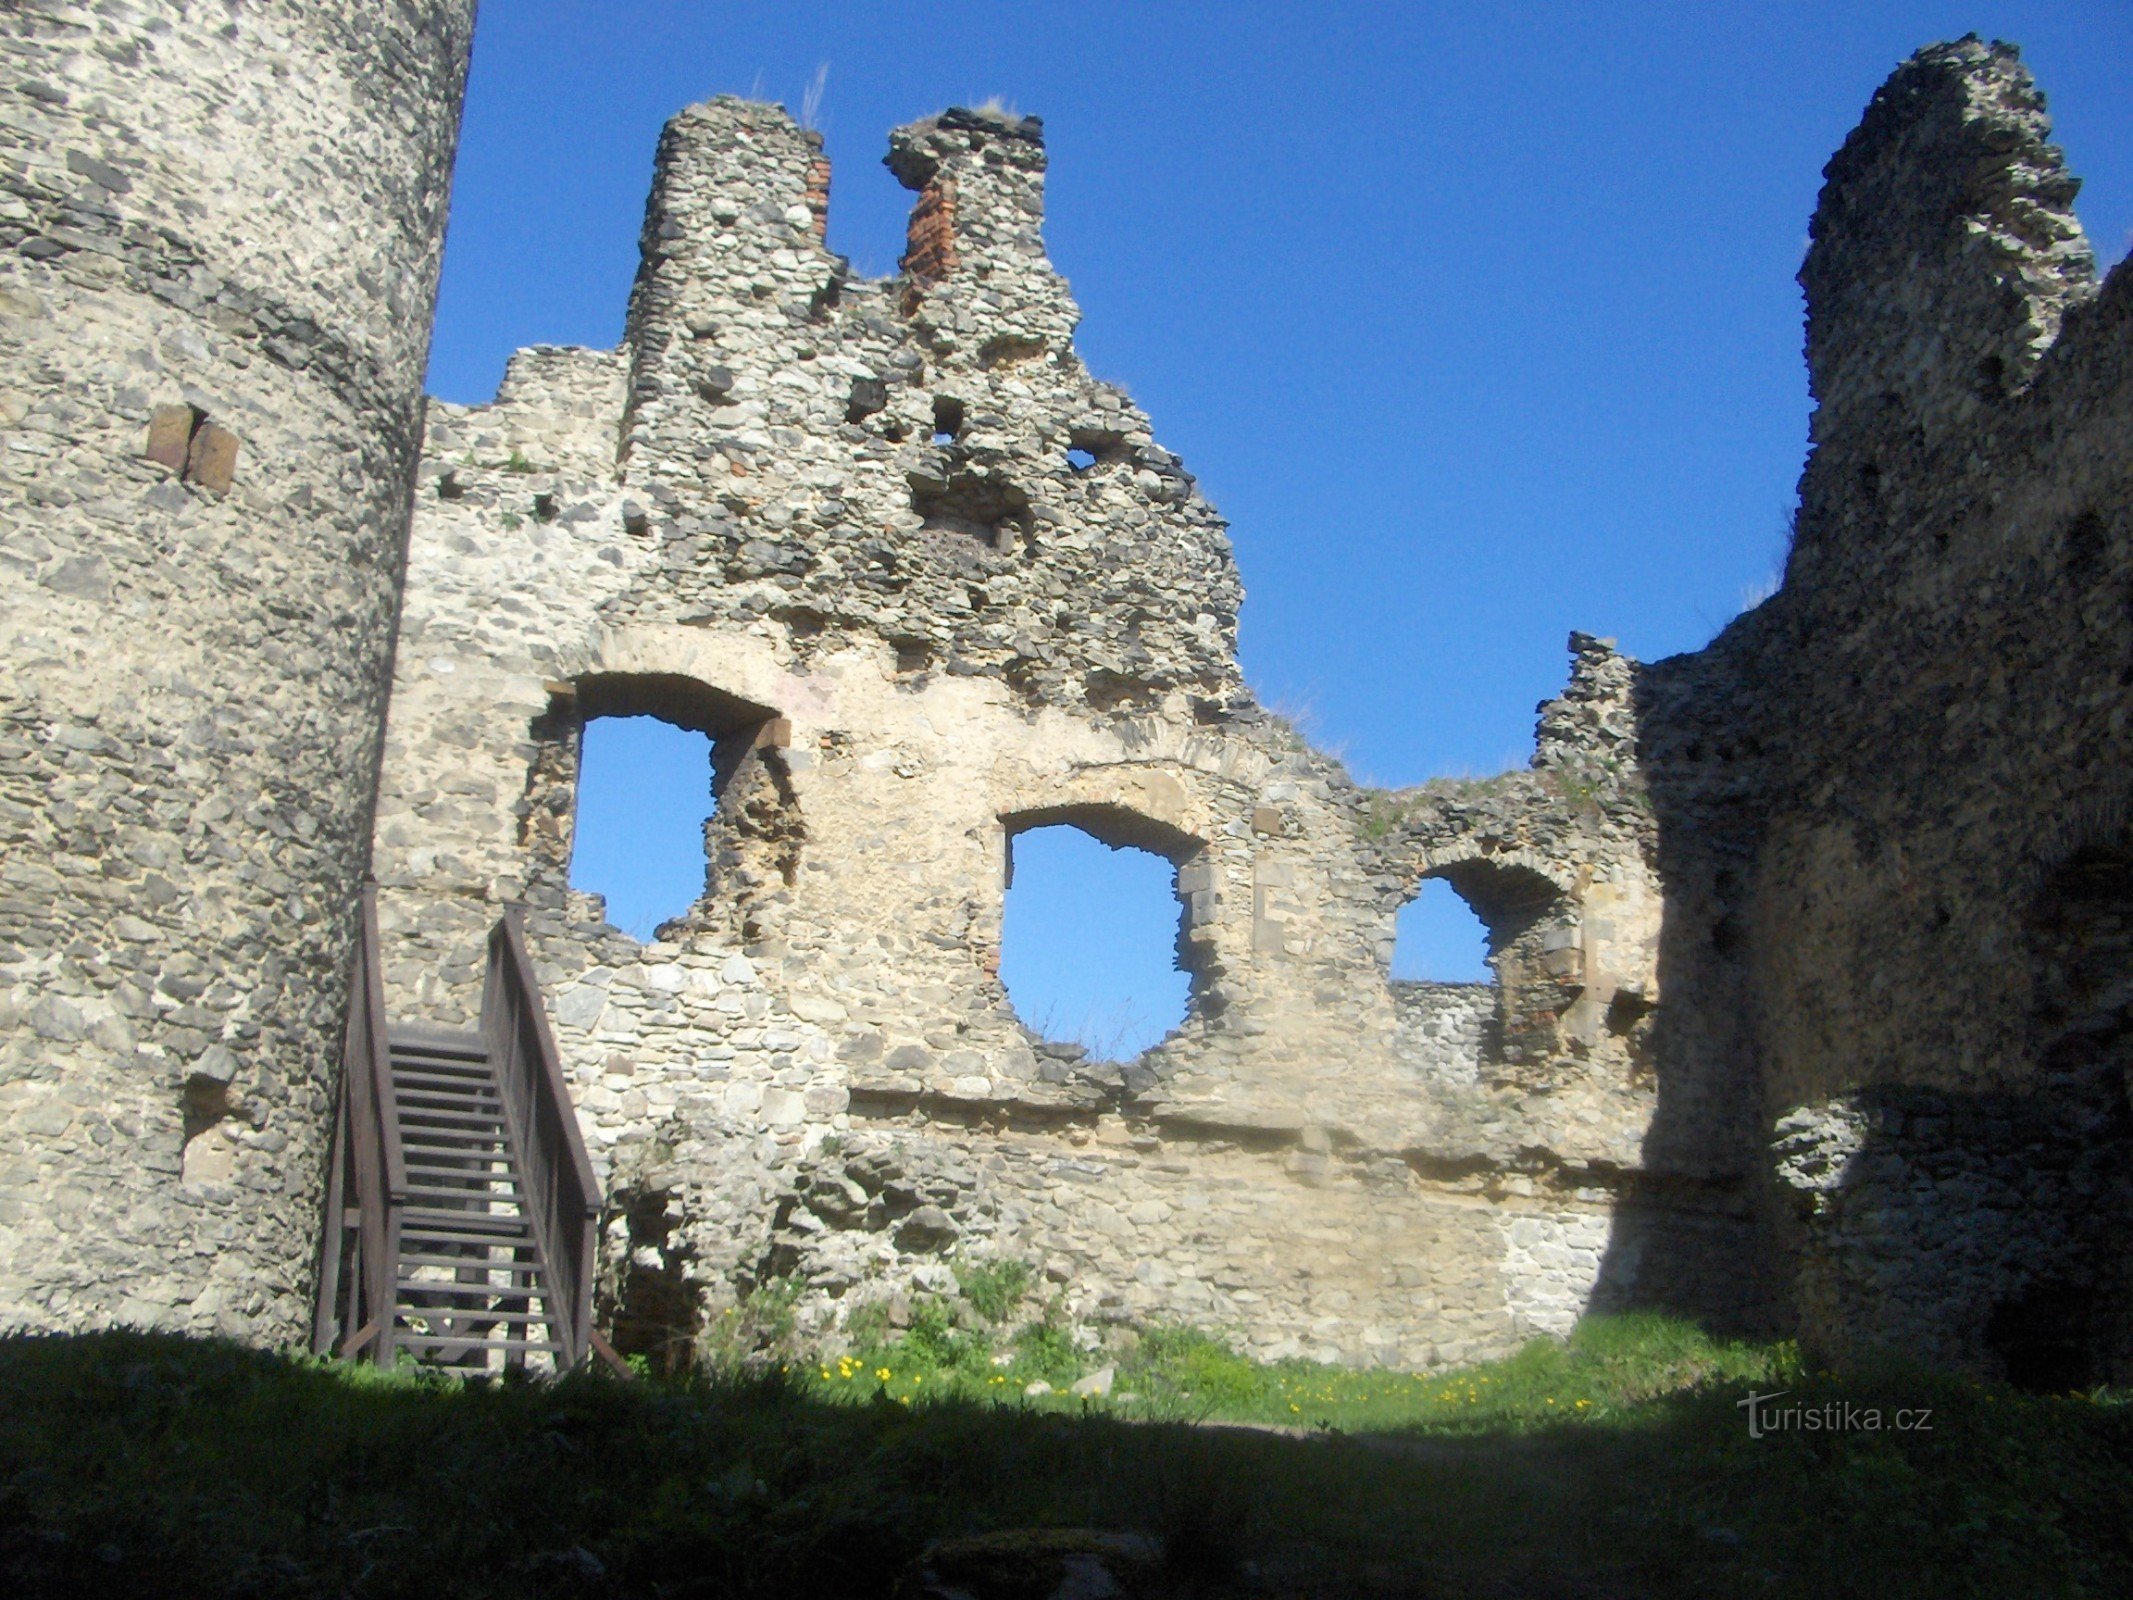 Tháp quan sát ở lâu đài Kostomlaty.